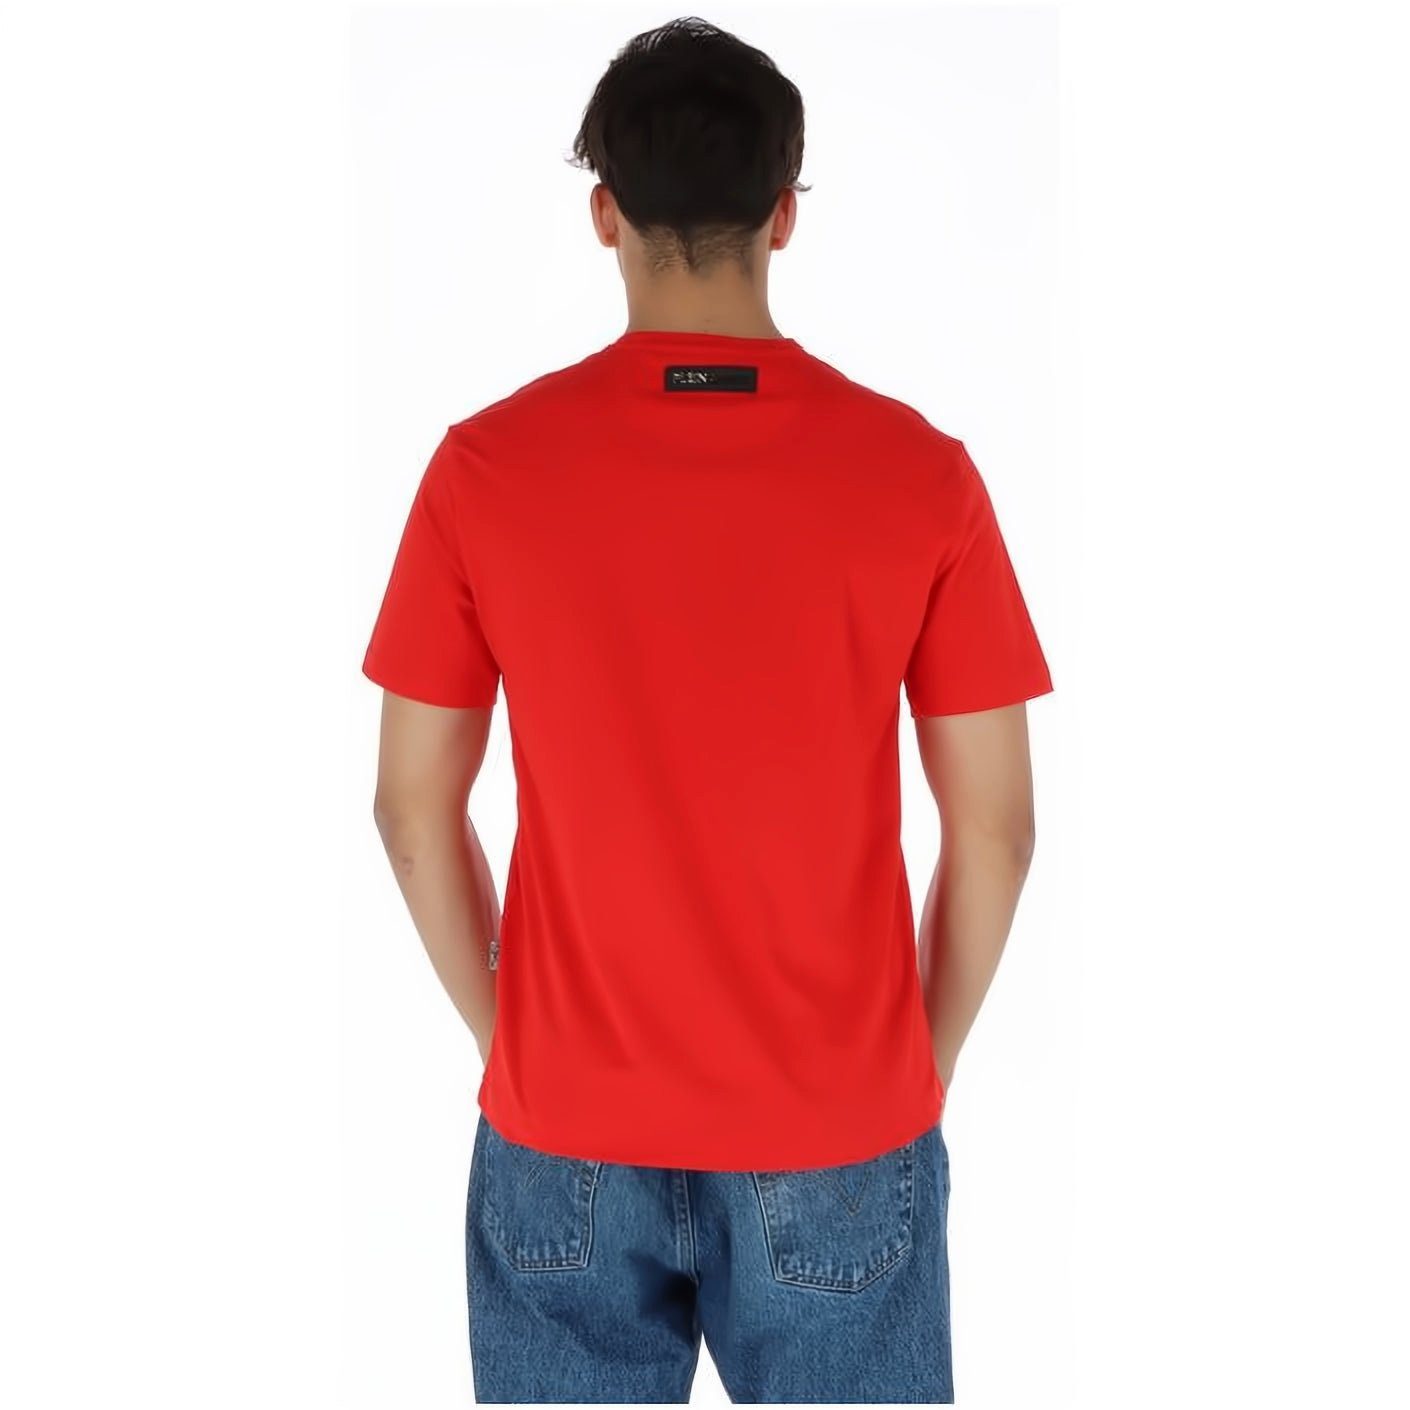 NECK hoher T-Shirt PLEIN Look, ROUND Stylischer SPORT Tragekomfort, Farbauswahl vielfältige